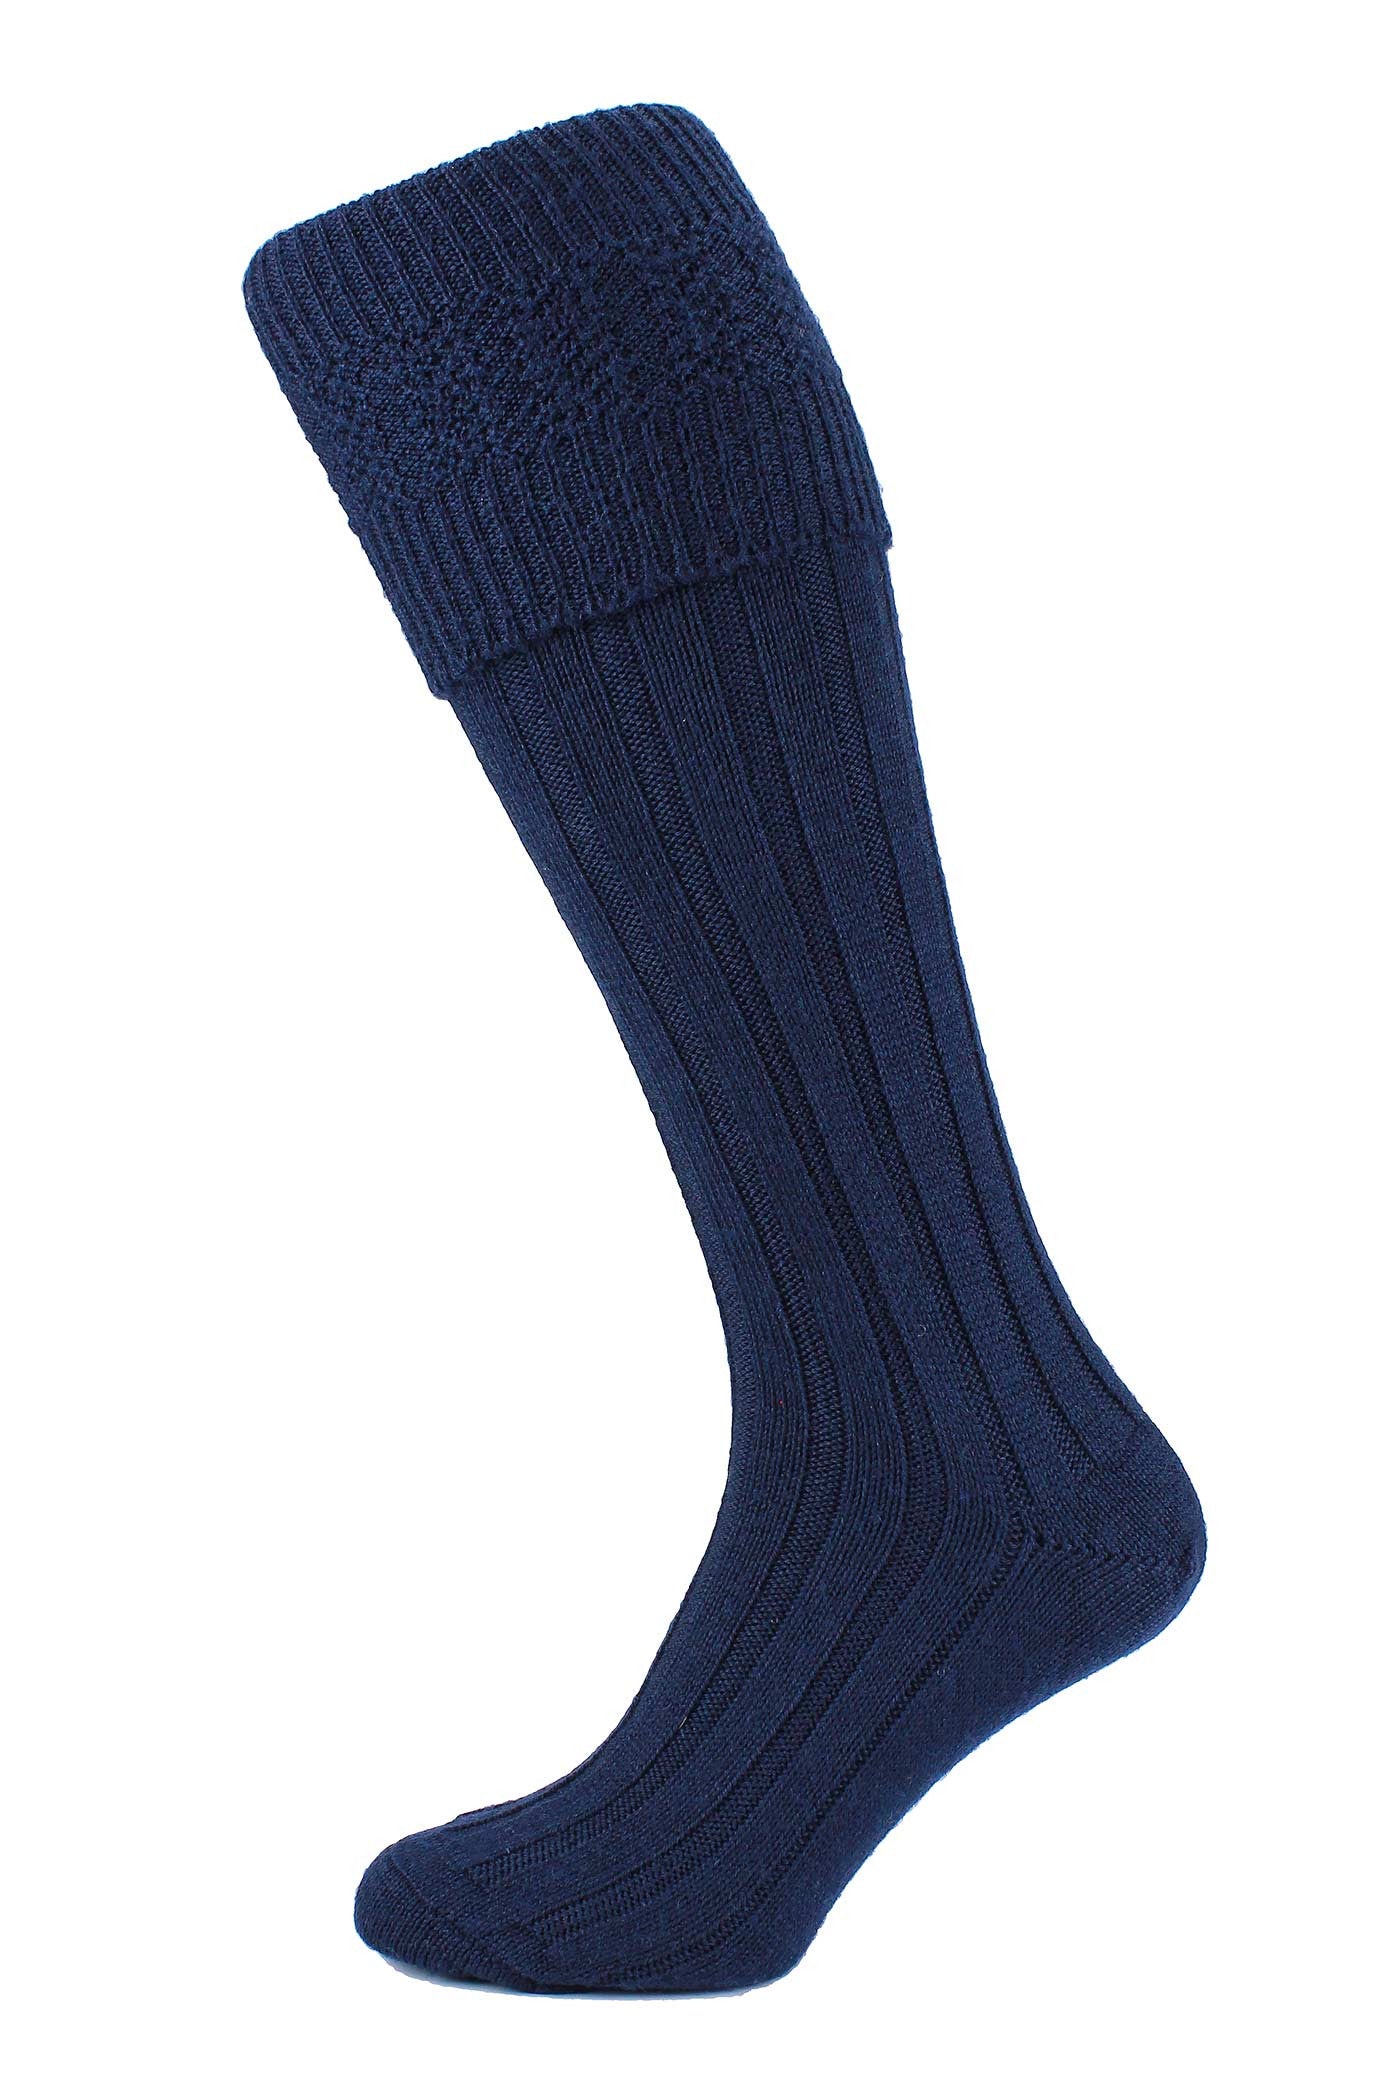 Kilt Socks - Navy Blue – Anderson Kilts